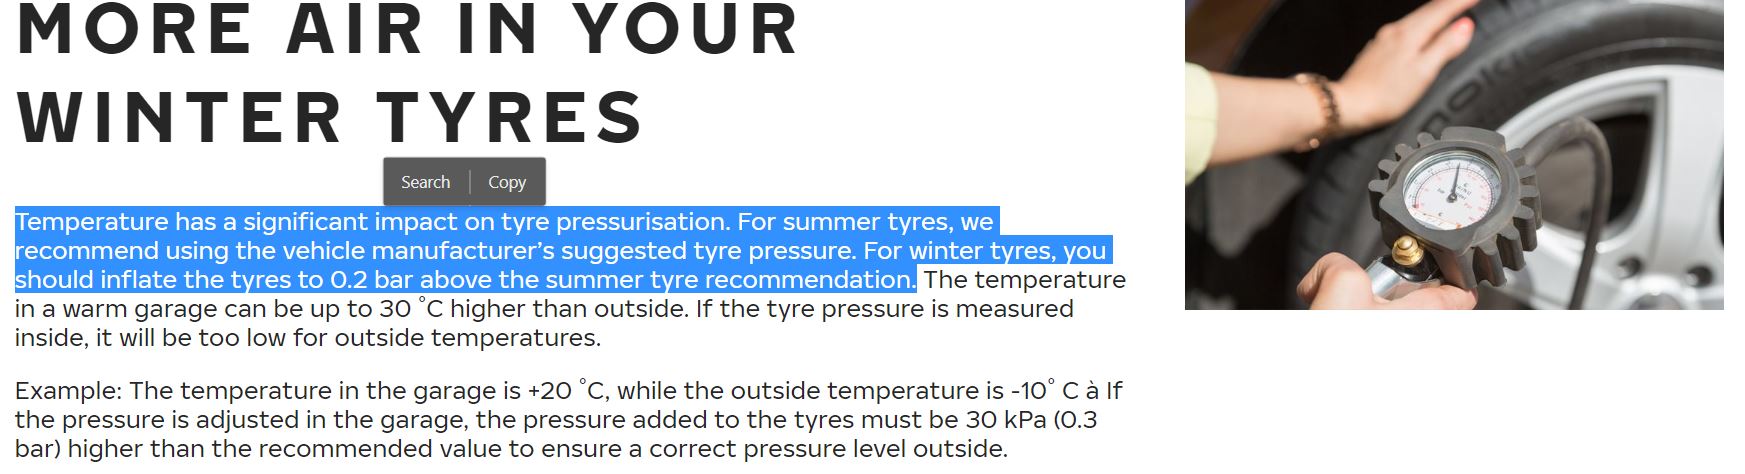 Winter tyre pressure.JPG